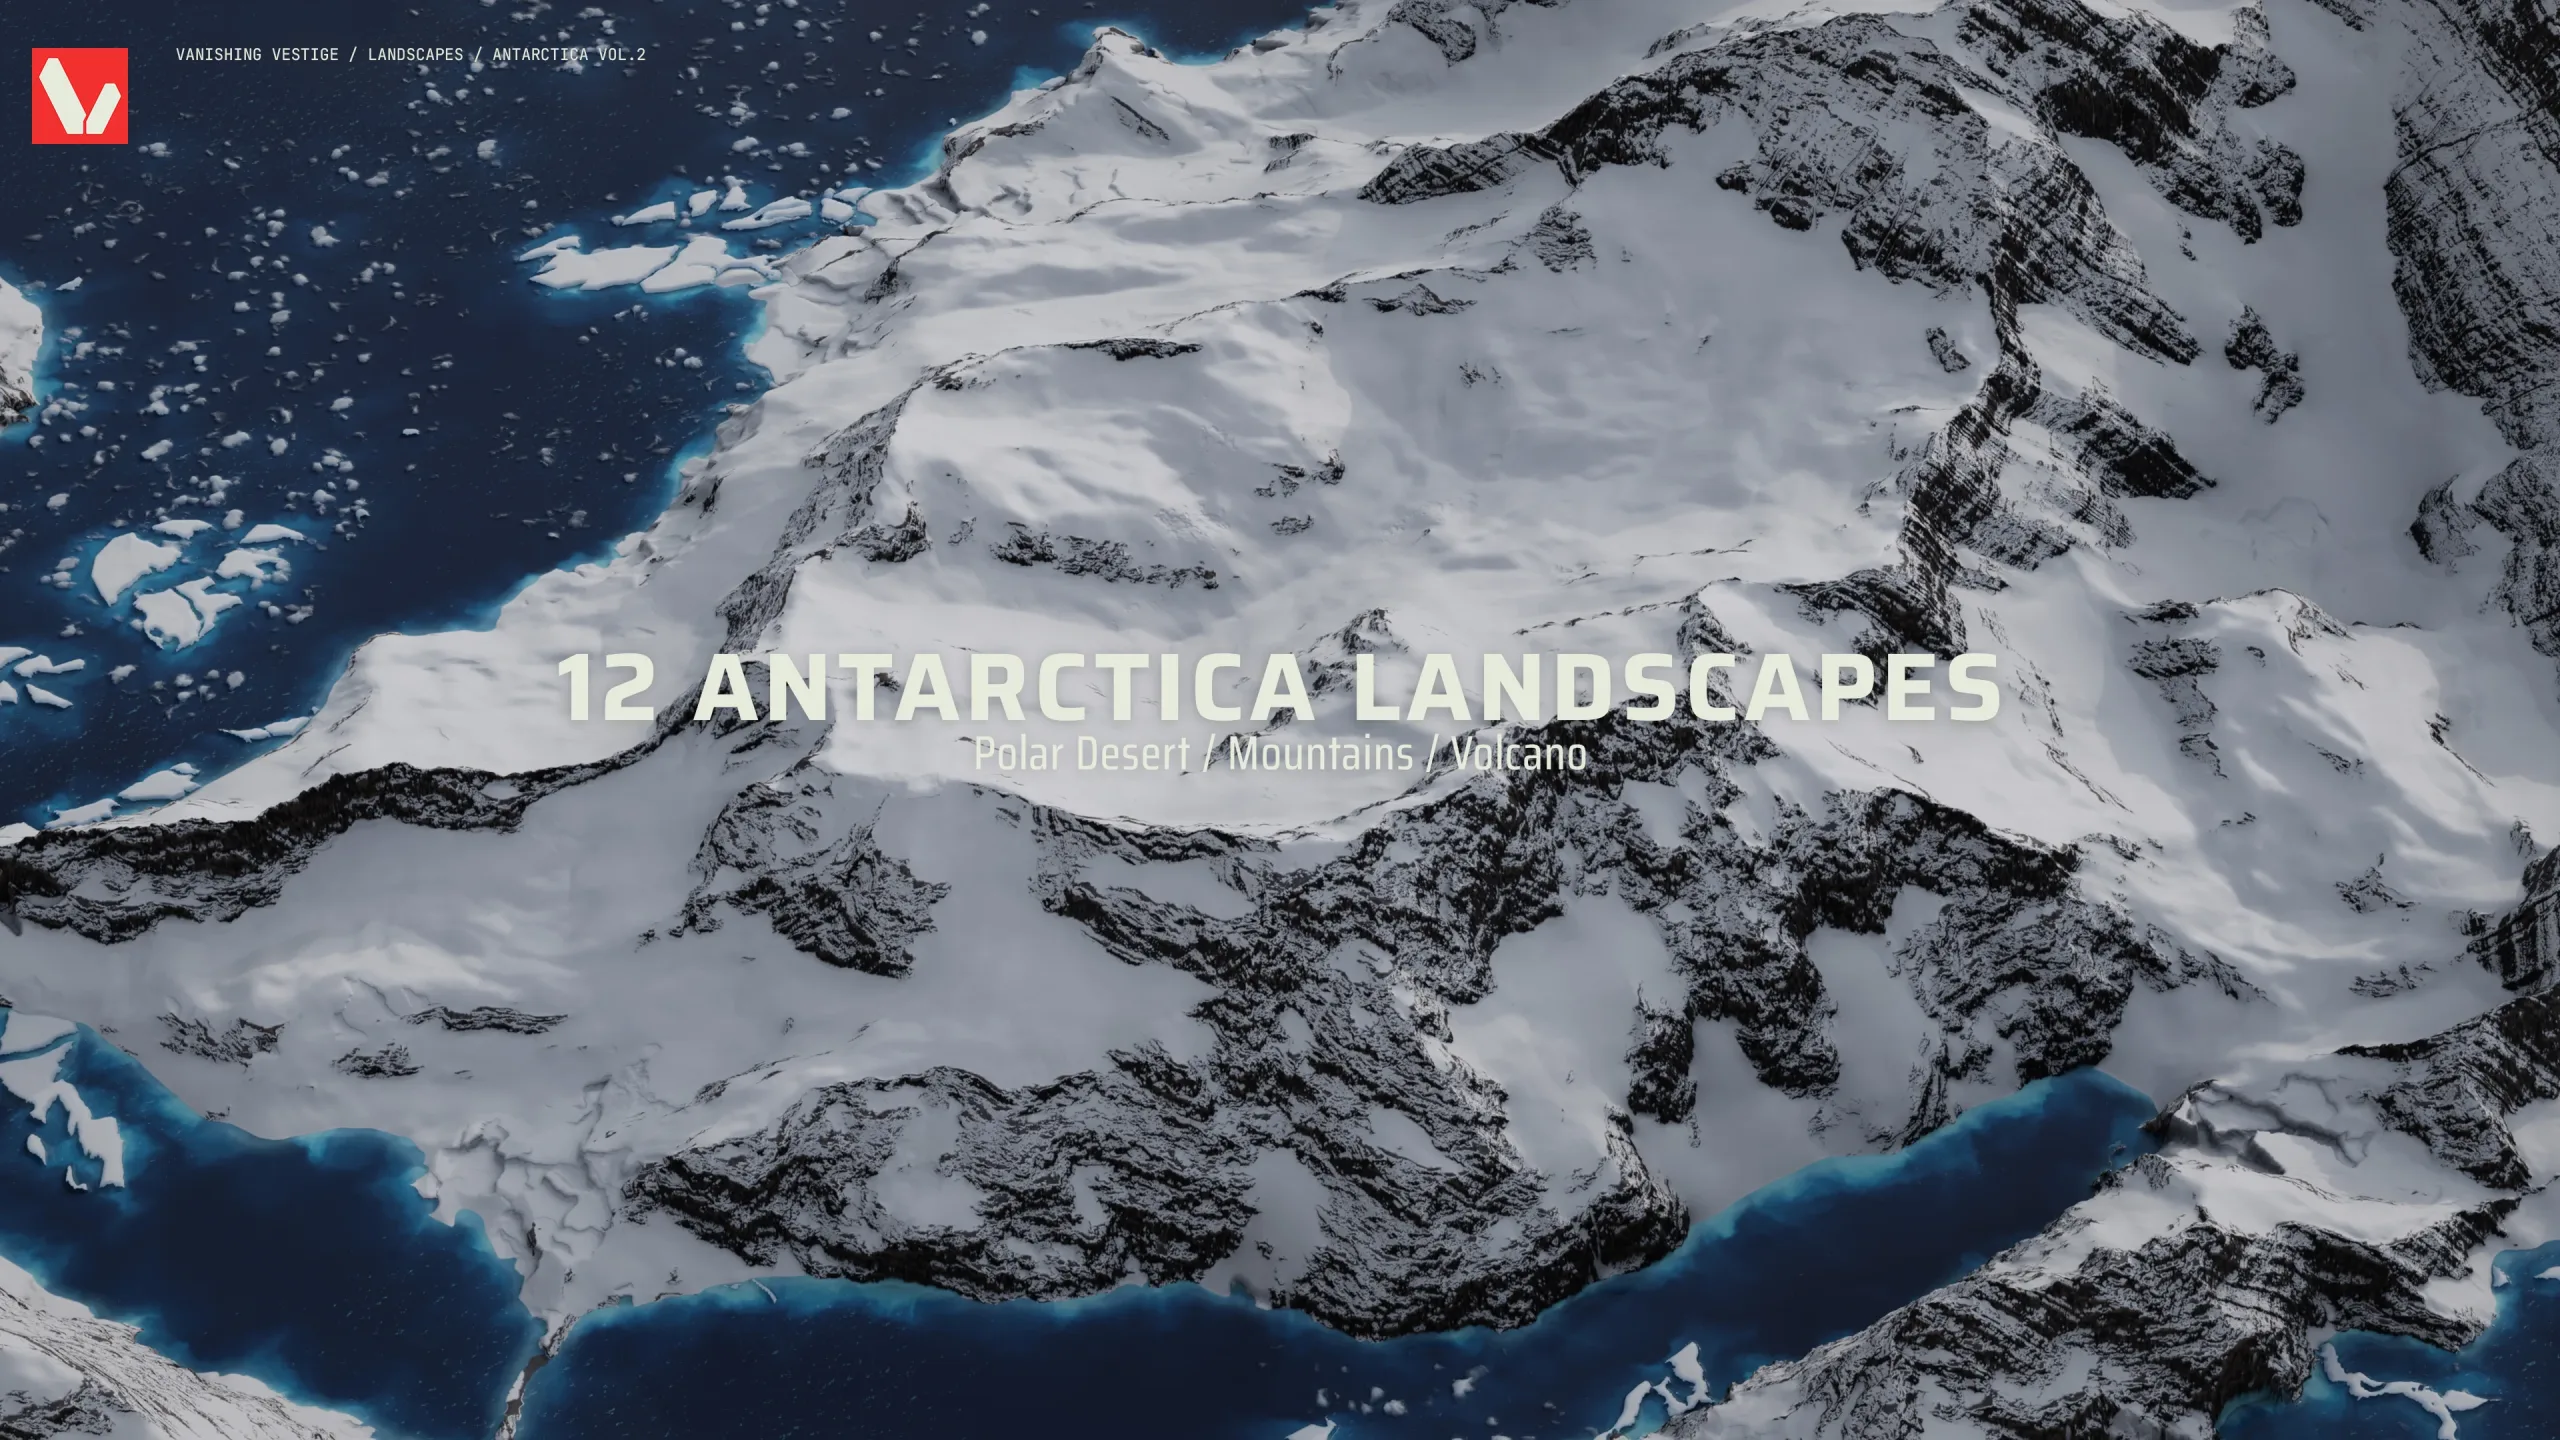 8k Landscapes - Antarctica Vol.2